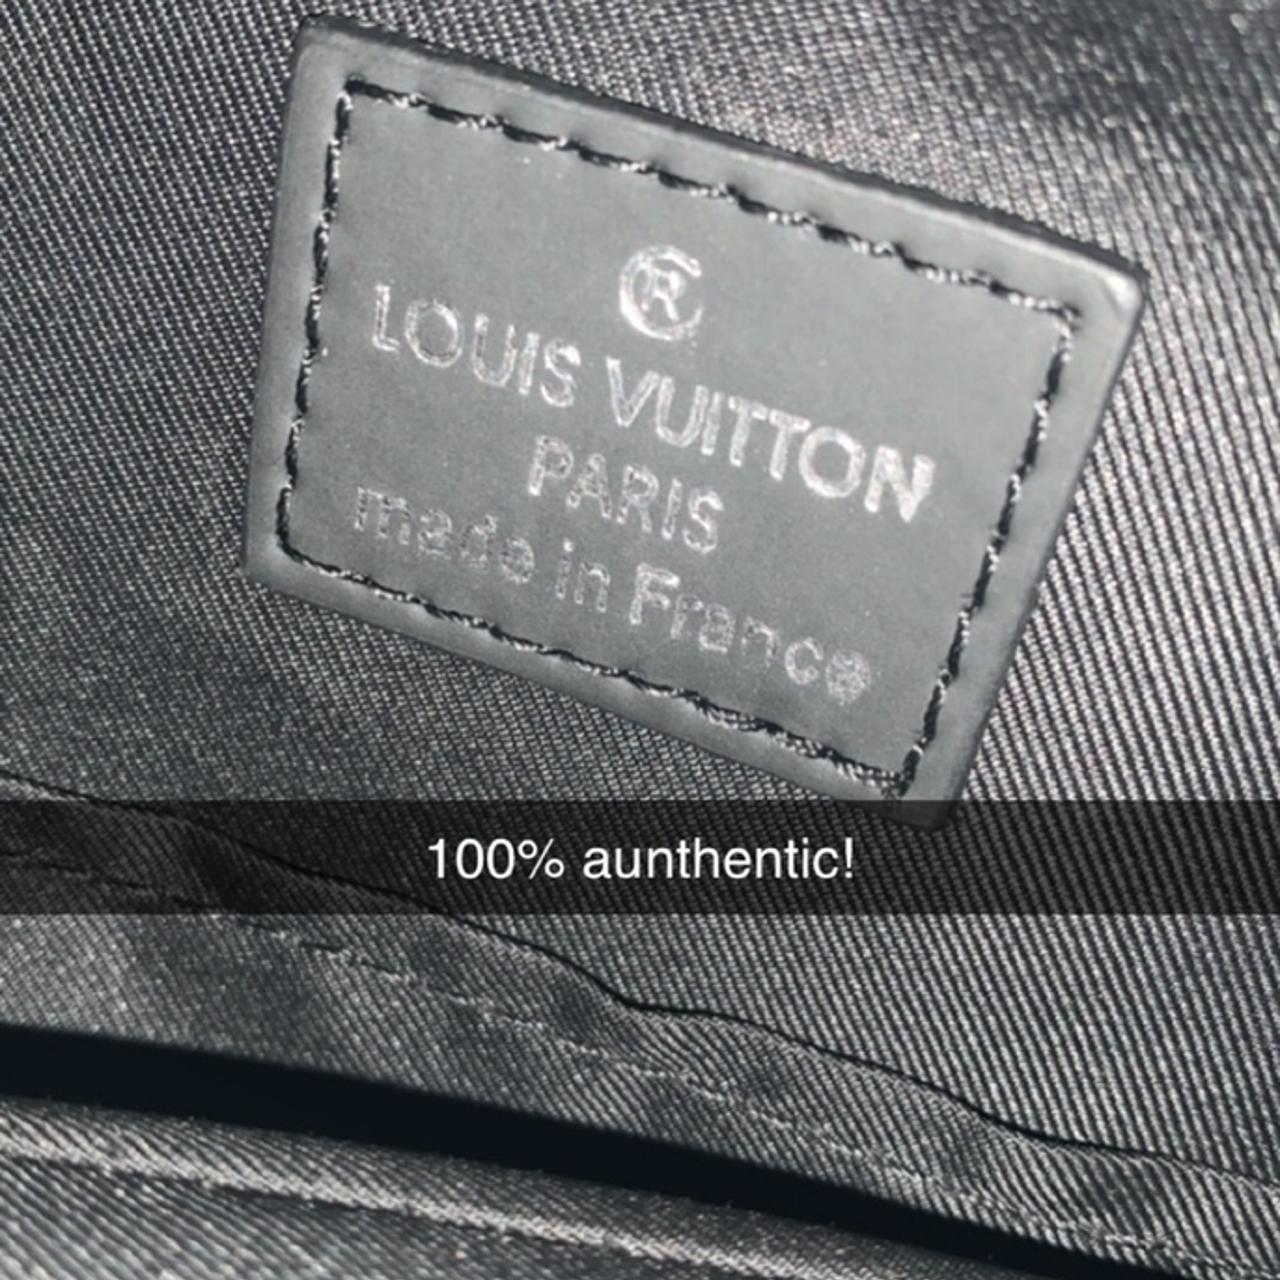 Louis Vuitton Sling Bag🗣 - AUTHENTIC - Great - Depop